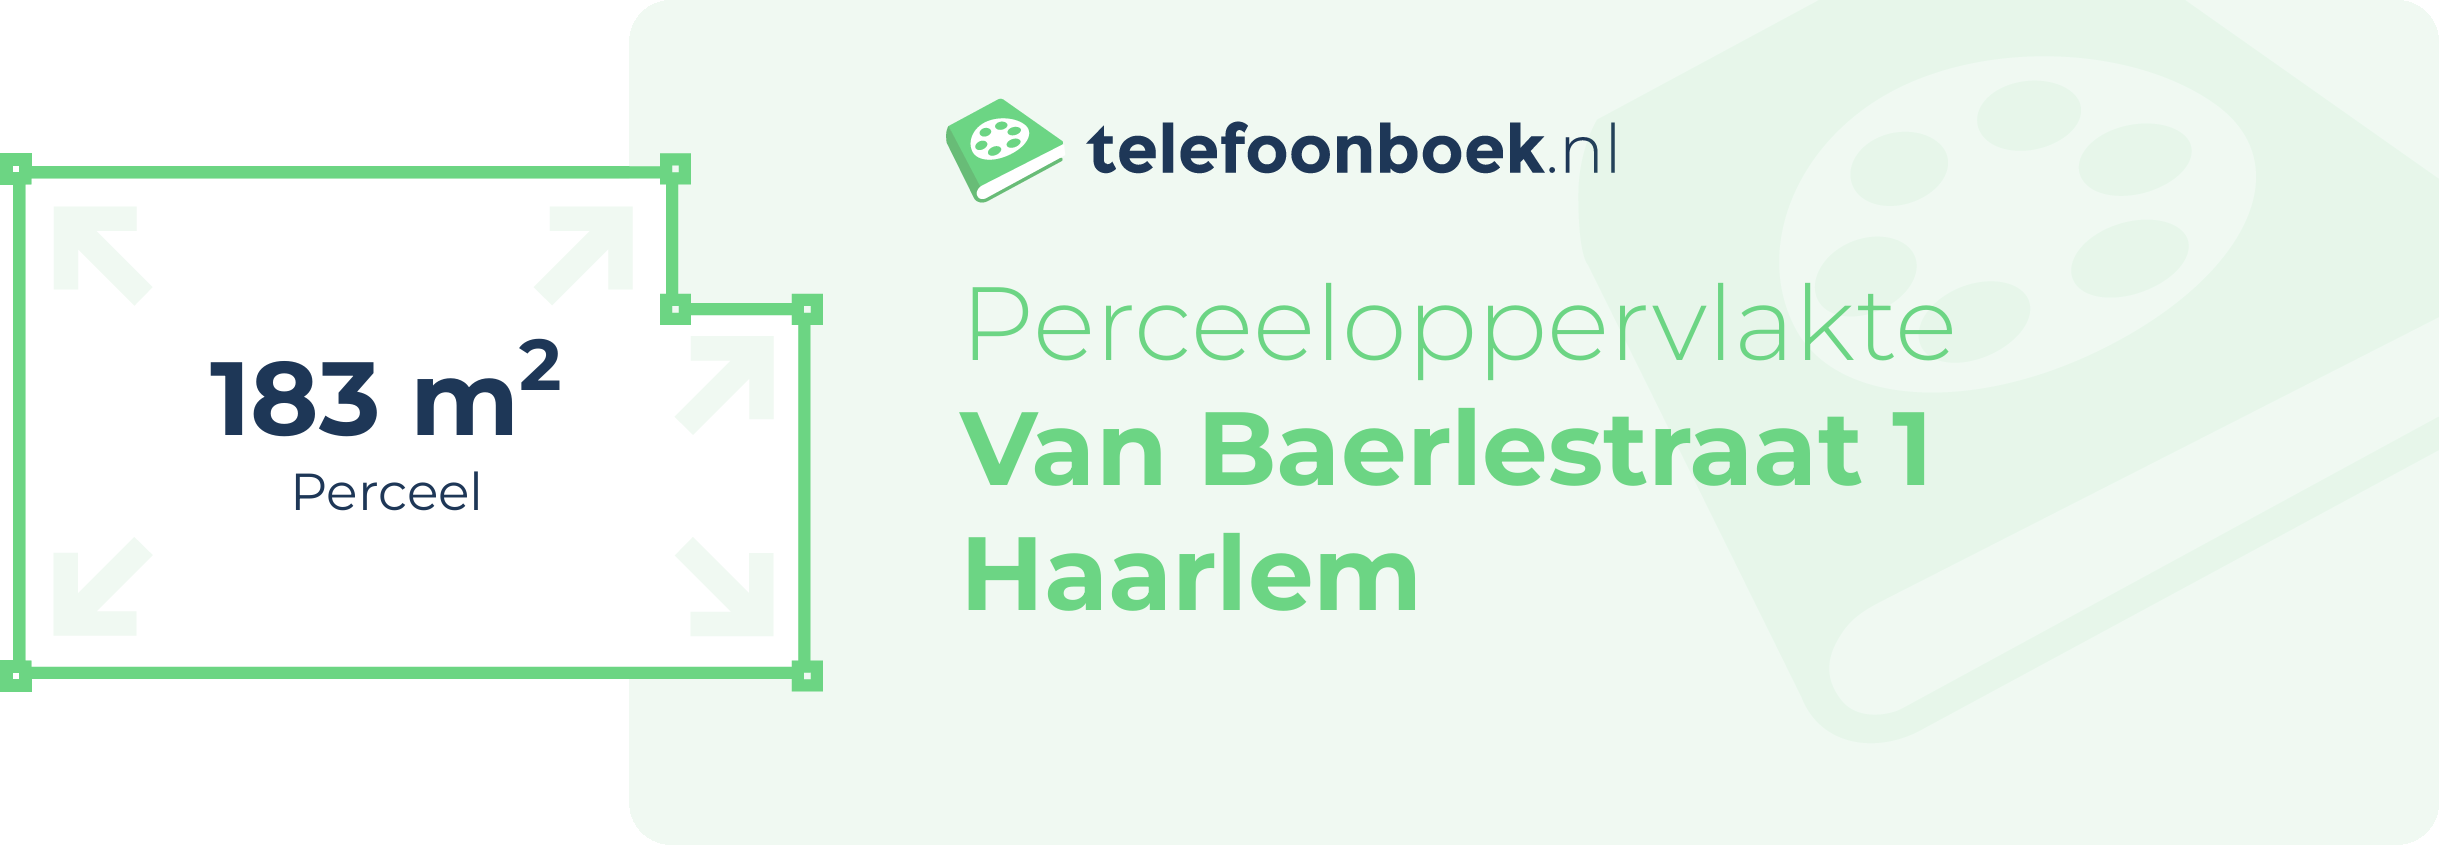 Perceeloppervlakte Van Baerlestraat 1 Haarlem